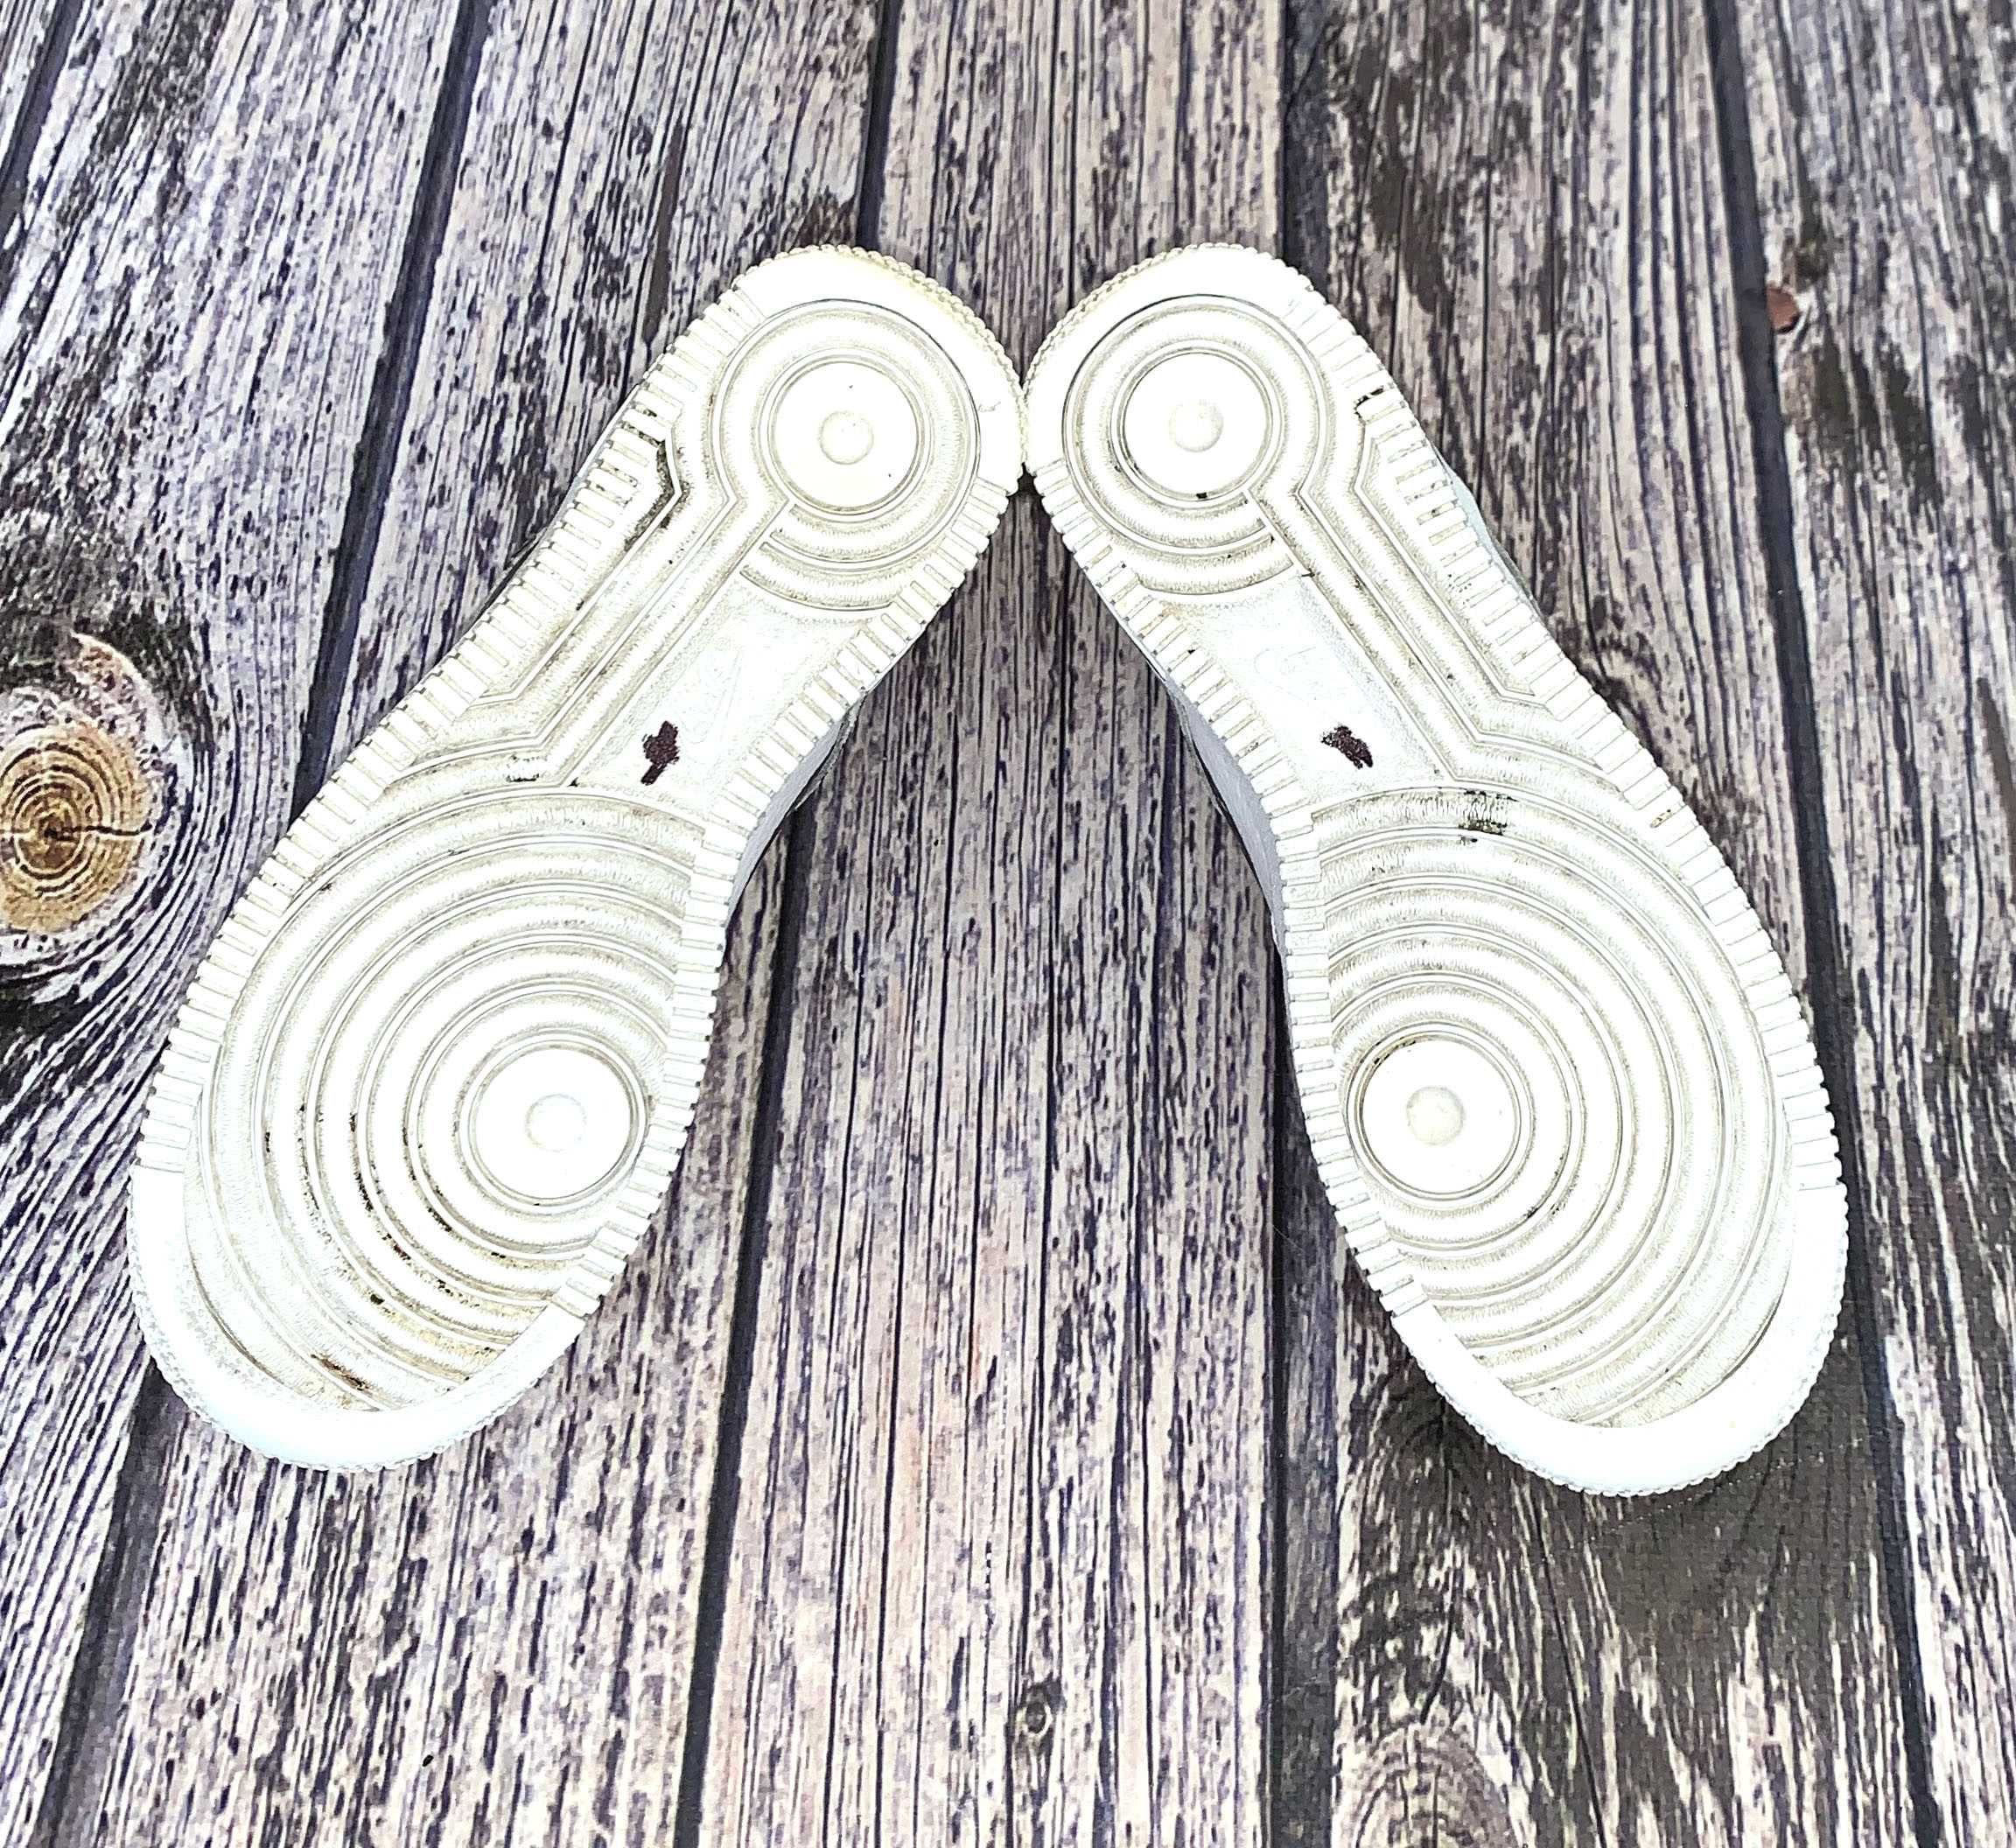 Декмисезонные кроссовки Nike air max для ребенка, размер 35 (22,5 см)